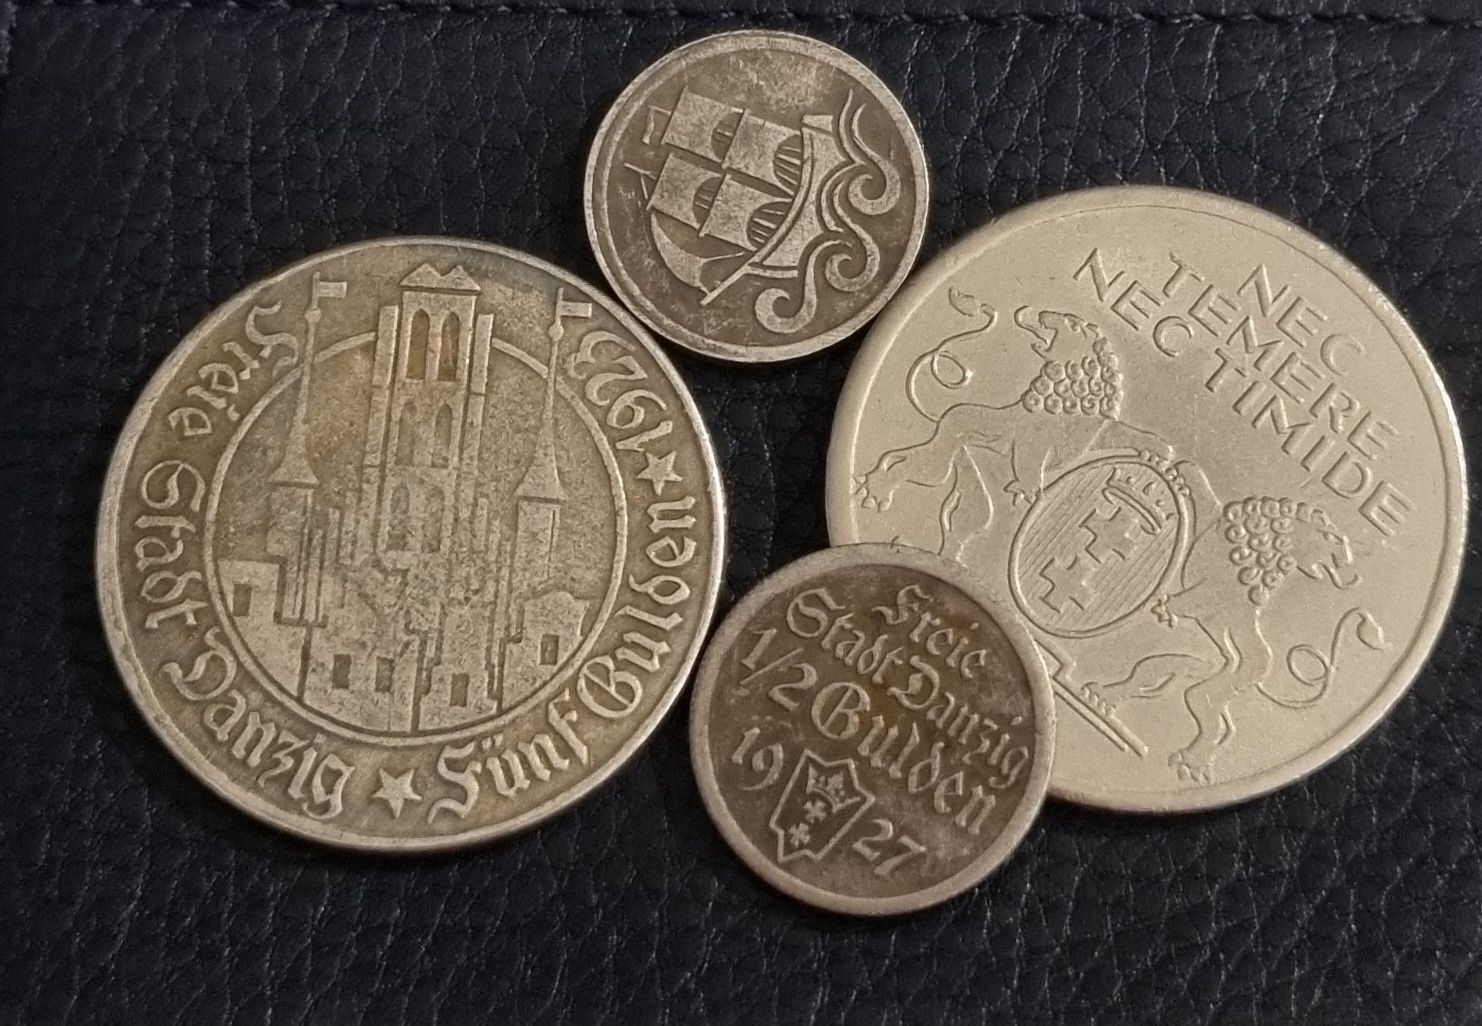 Stare monety / kopie monet danzig gulden